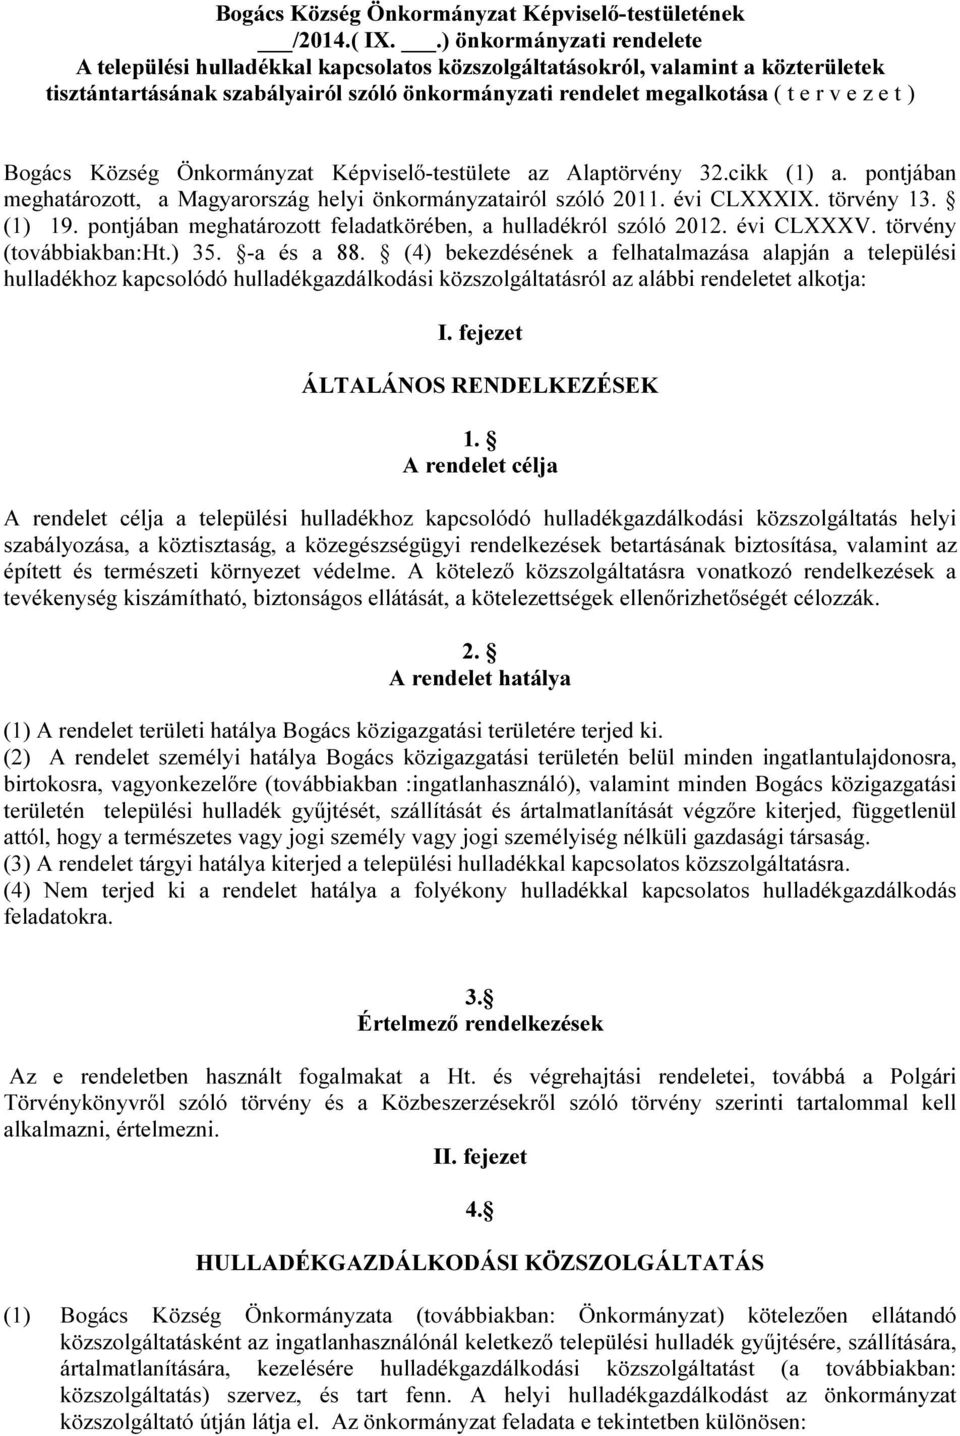 ) Bogács Község Önkormányzat Képviselő-testülete az Alaptörvény 32.cikk (1) a. pontjában meghatározott, a Magyarország helyi önkormányzatairól szóló 2011. évi CLXXXIX. törvény 13. (1) 19.